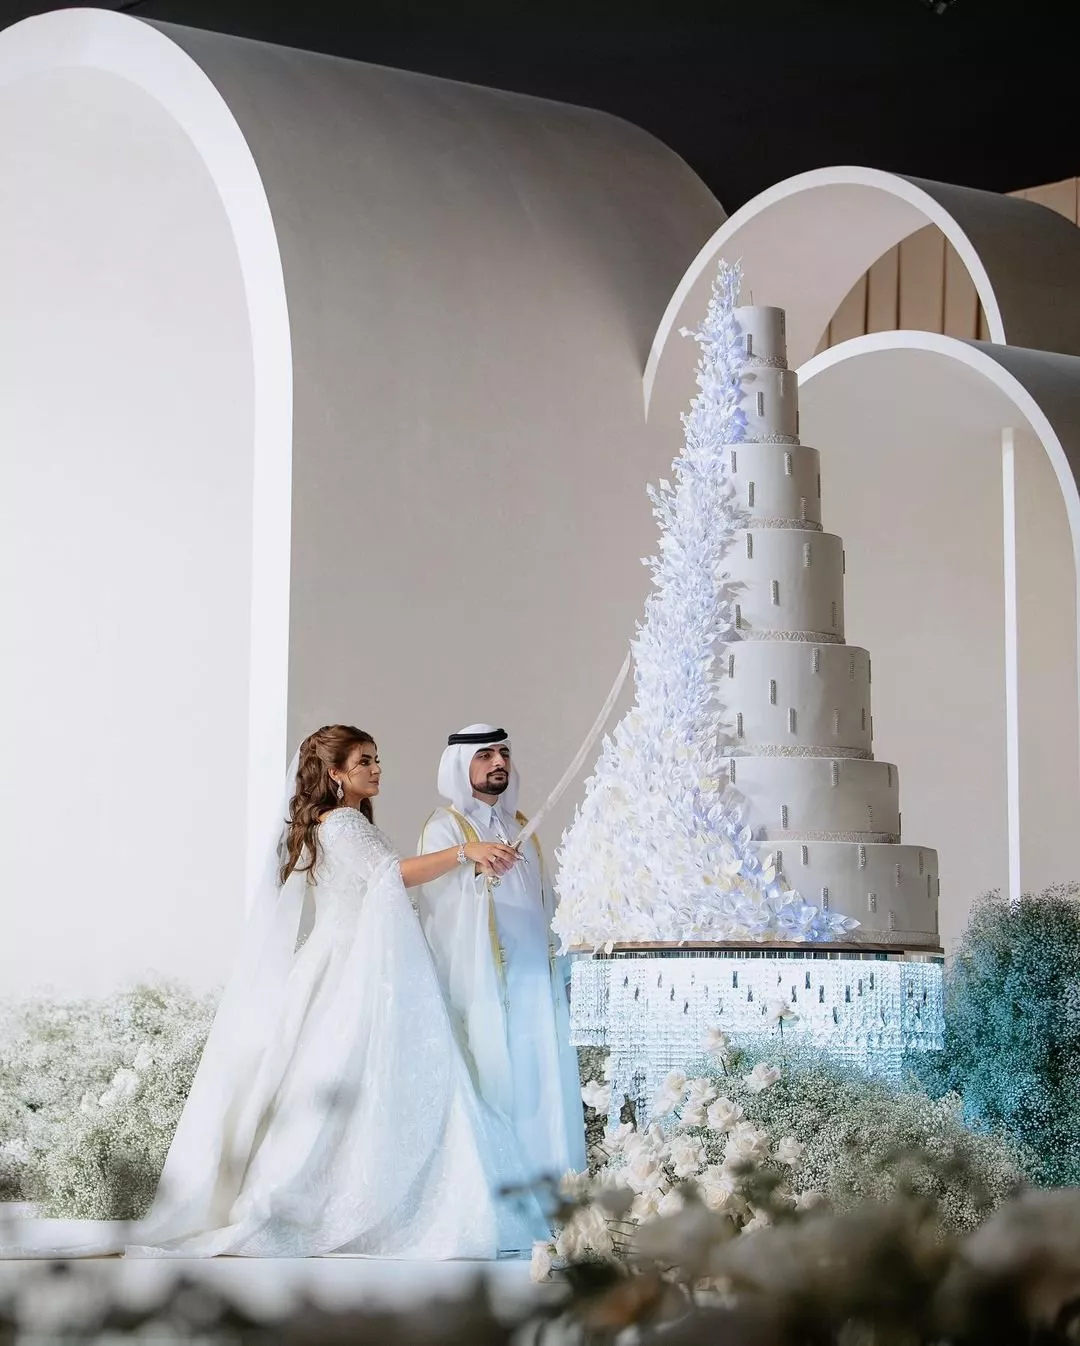 صور من حفل زفاف الشيخة مهرة بنت محمد آل مكتوم والشيخ مانع آل مكتوم